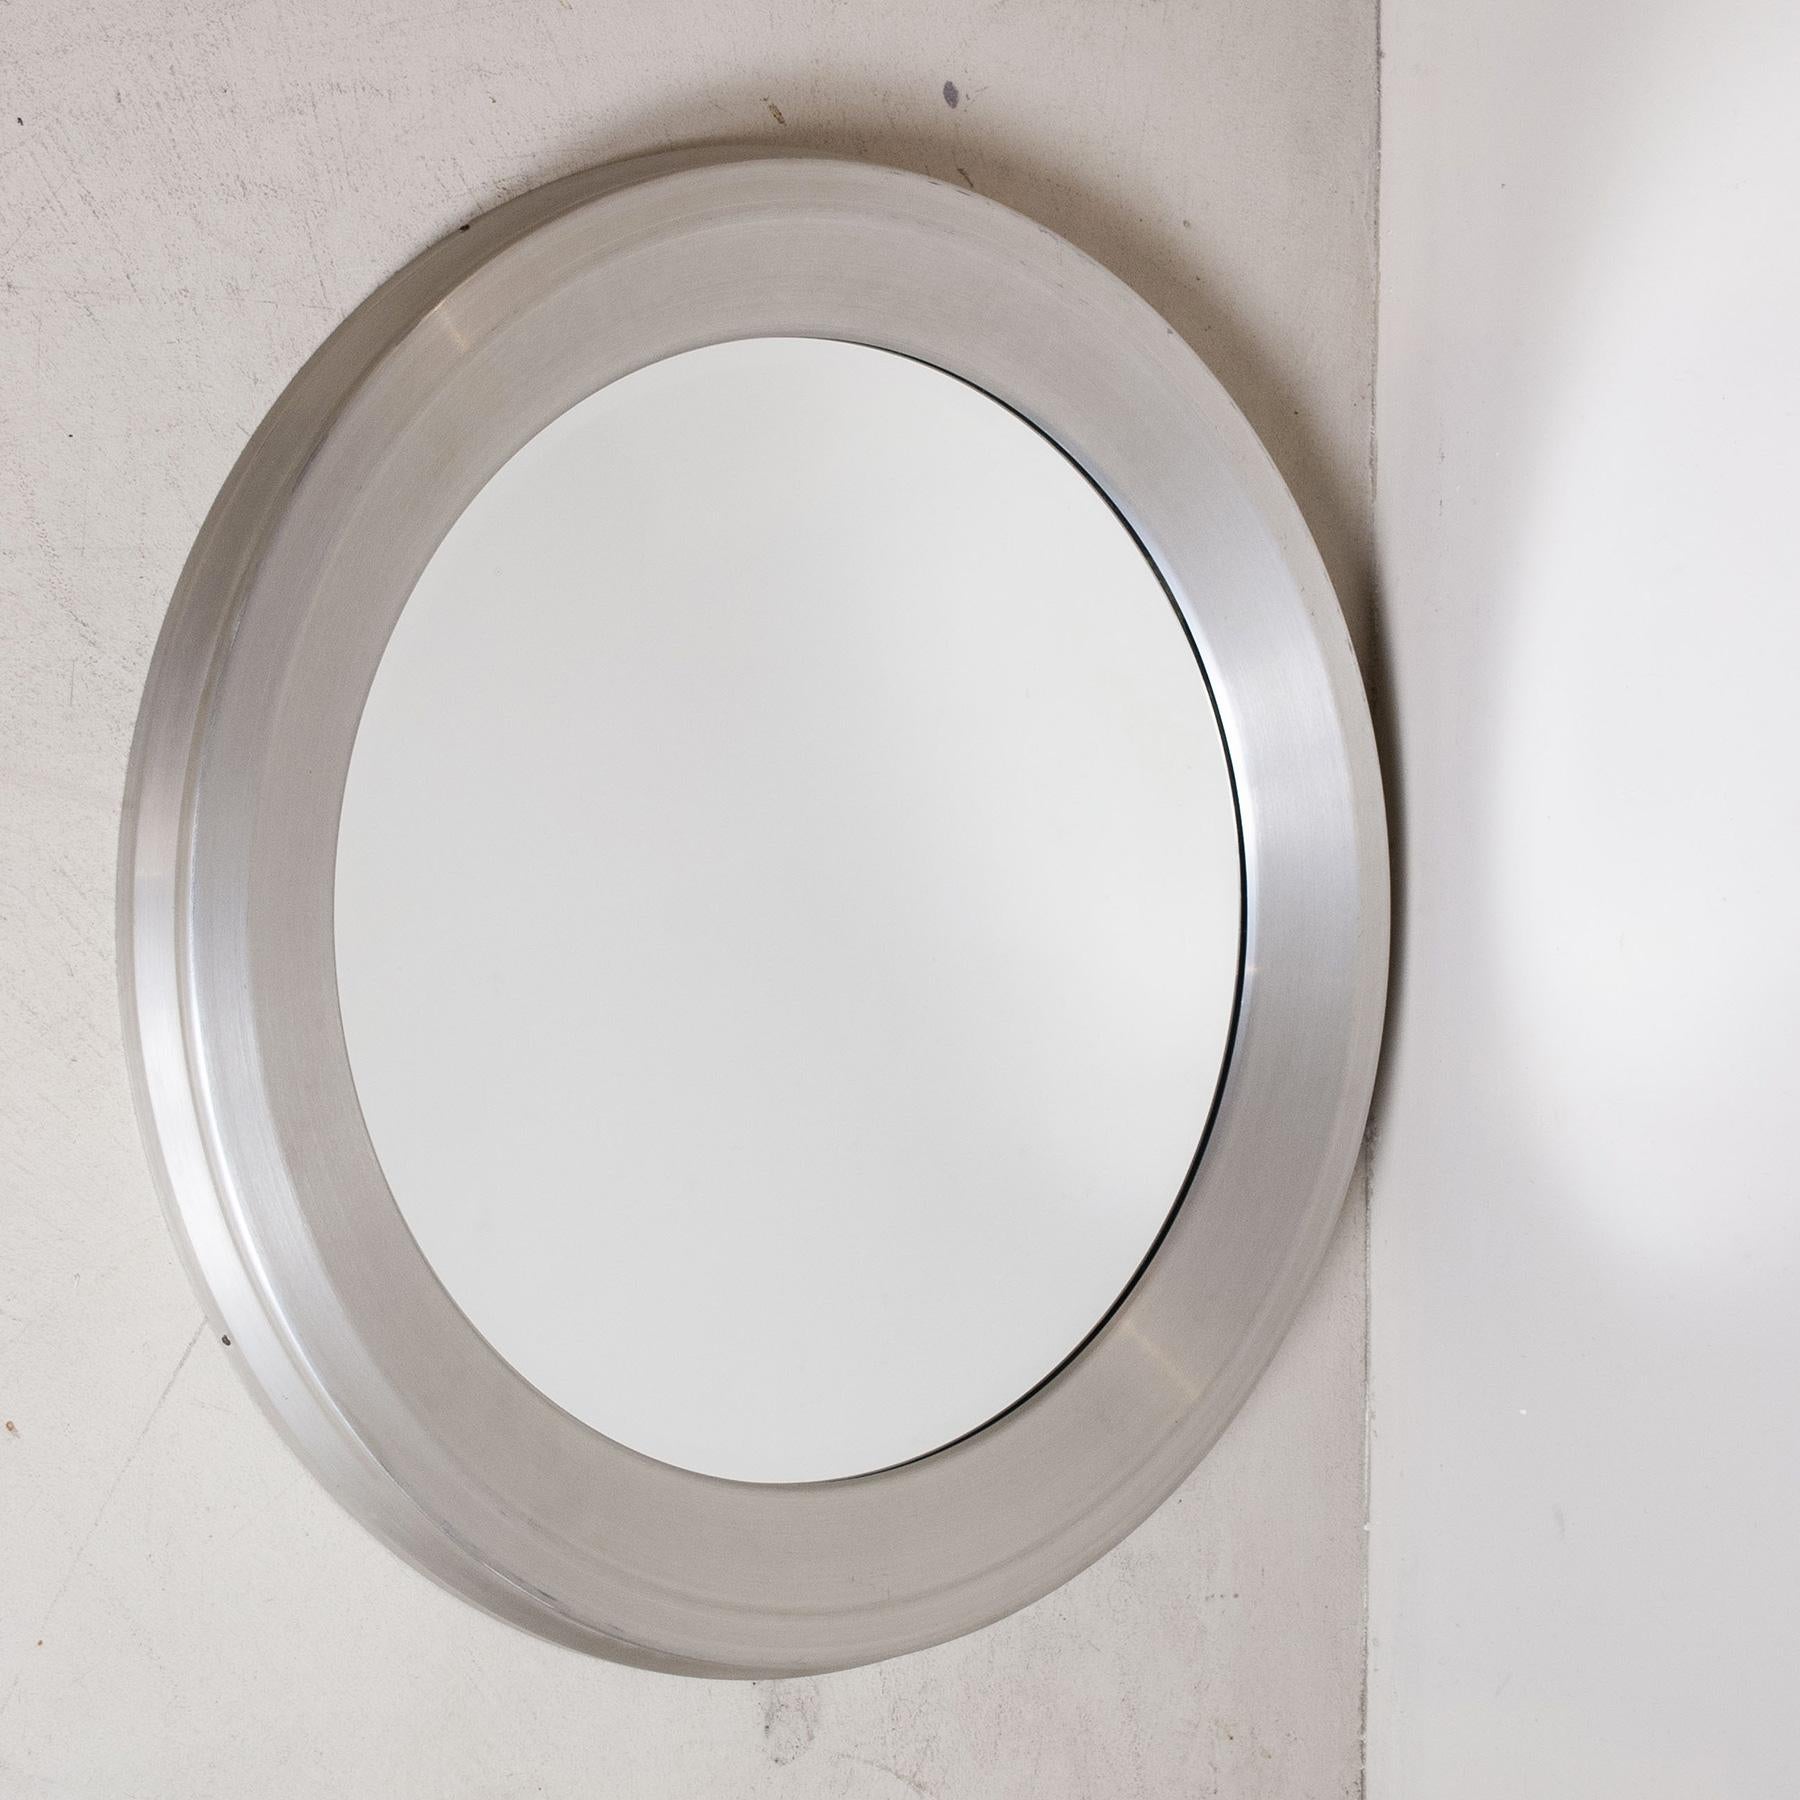 Runder Spiegel mit satiniertem Aluminiumrahmen und abgeschrägtem Spiegel Modell Narciso von Sergio Mazza für Artemide, Ende der 1960er Jahre

Sergio Mazza ist ein italienischer Designer, der 1931 in Mailand geboren wurde. 1955 begann er seine